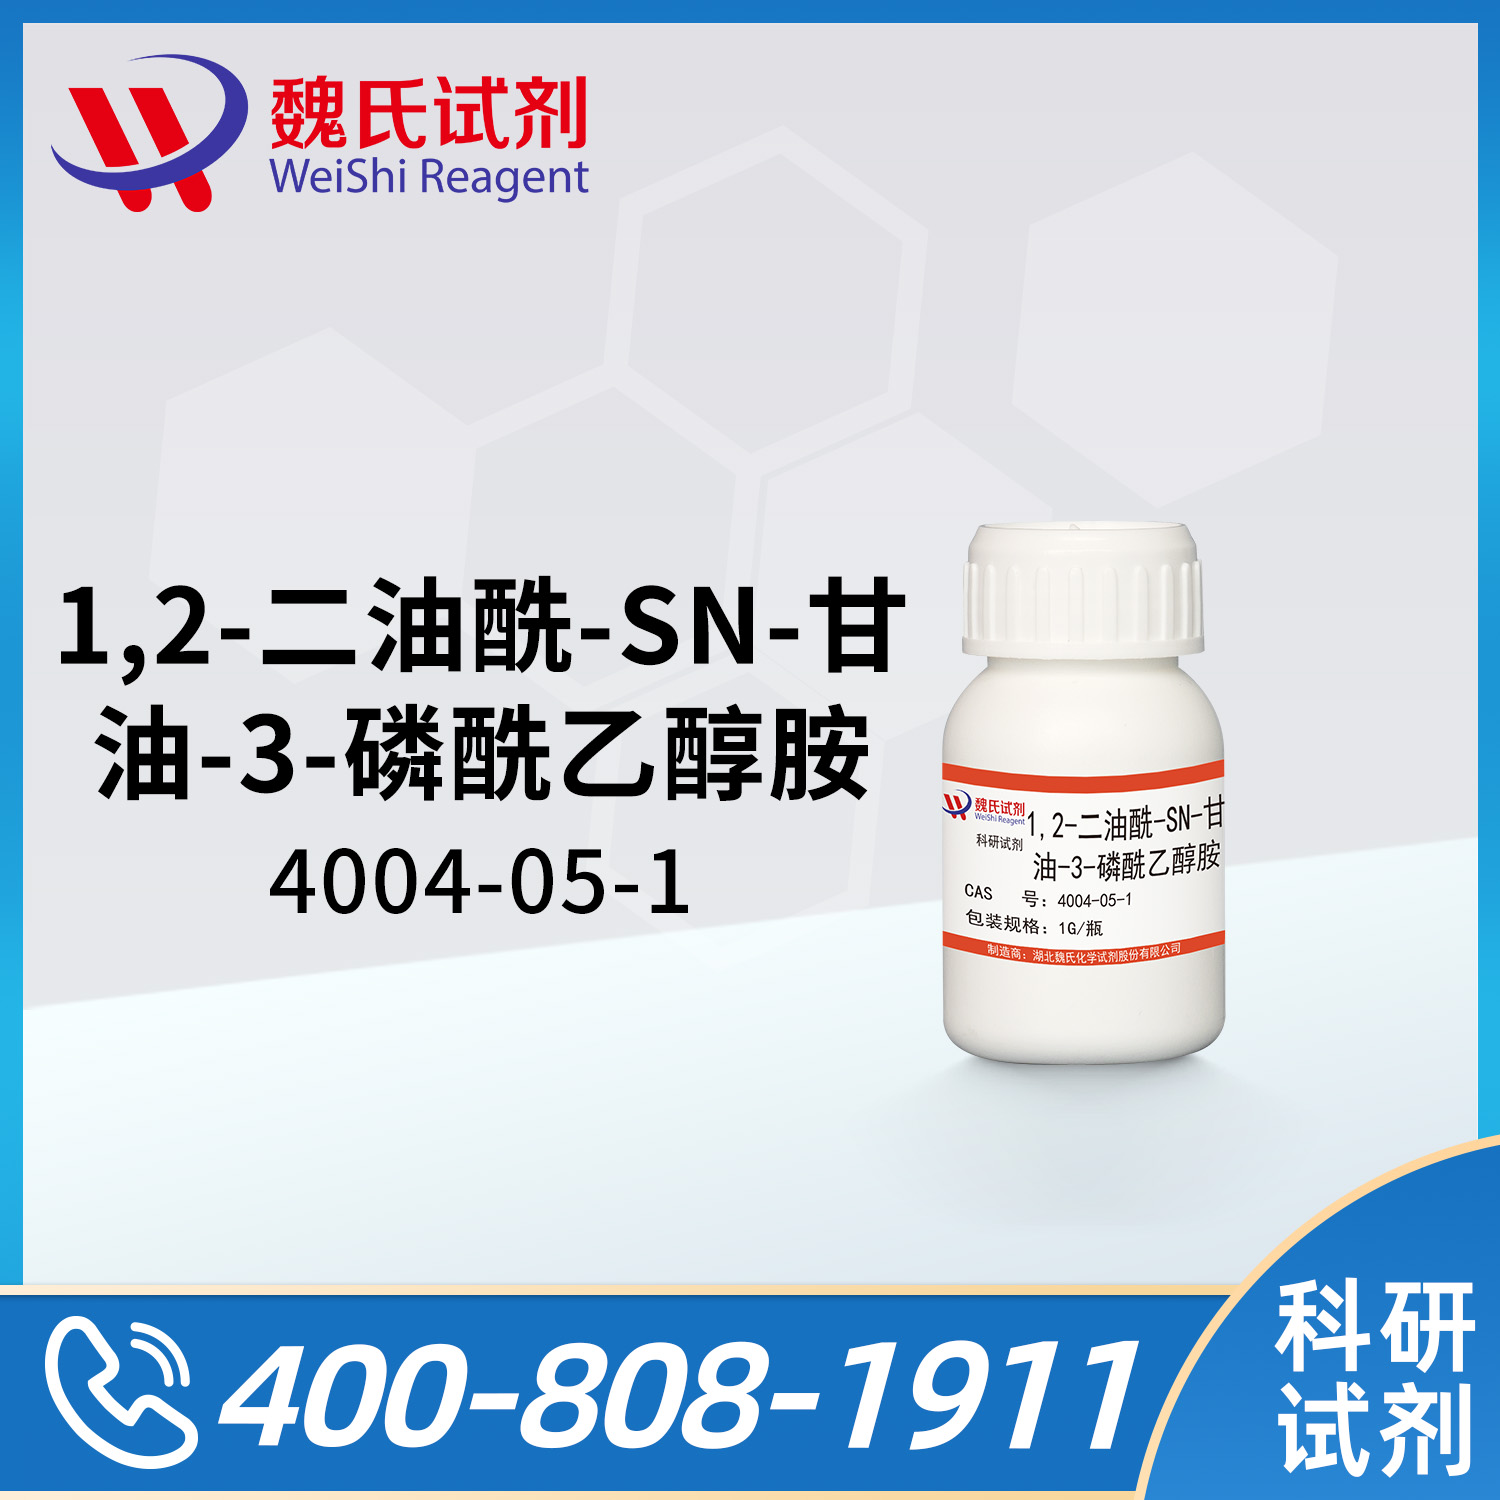 1,2-二油酰-SN-甘油-3-磷酰乙醇胺；DOPE